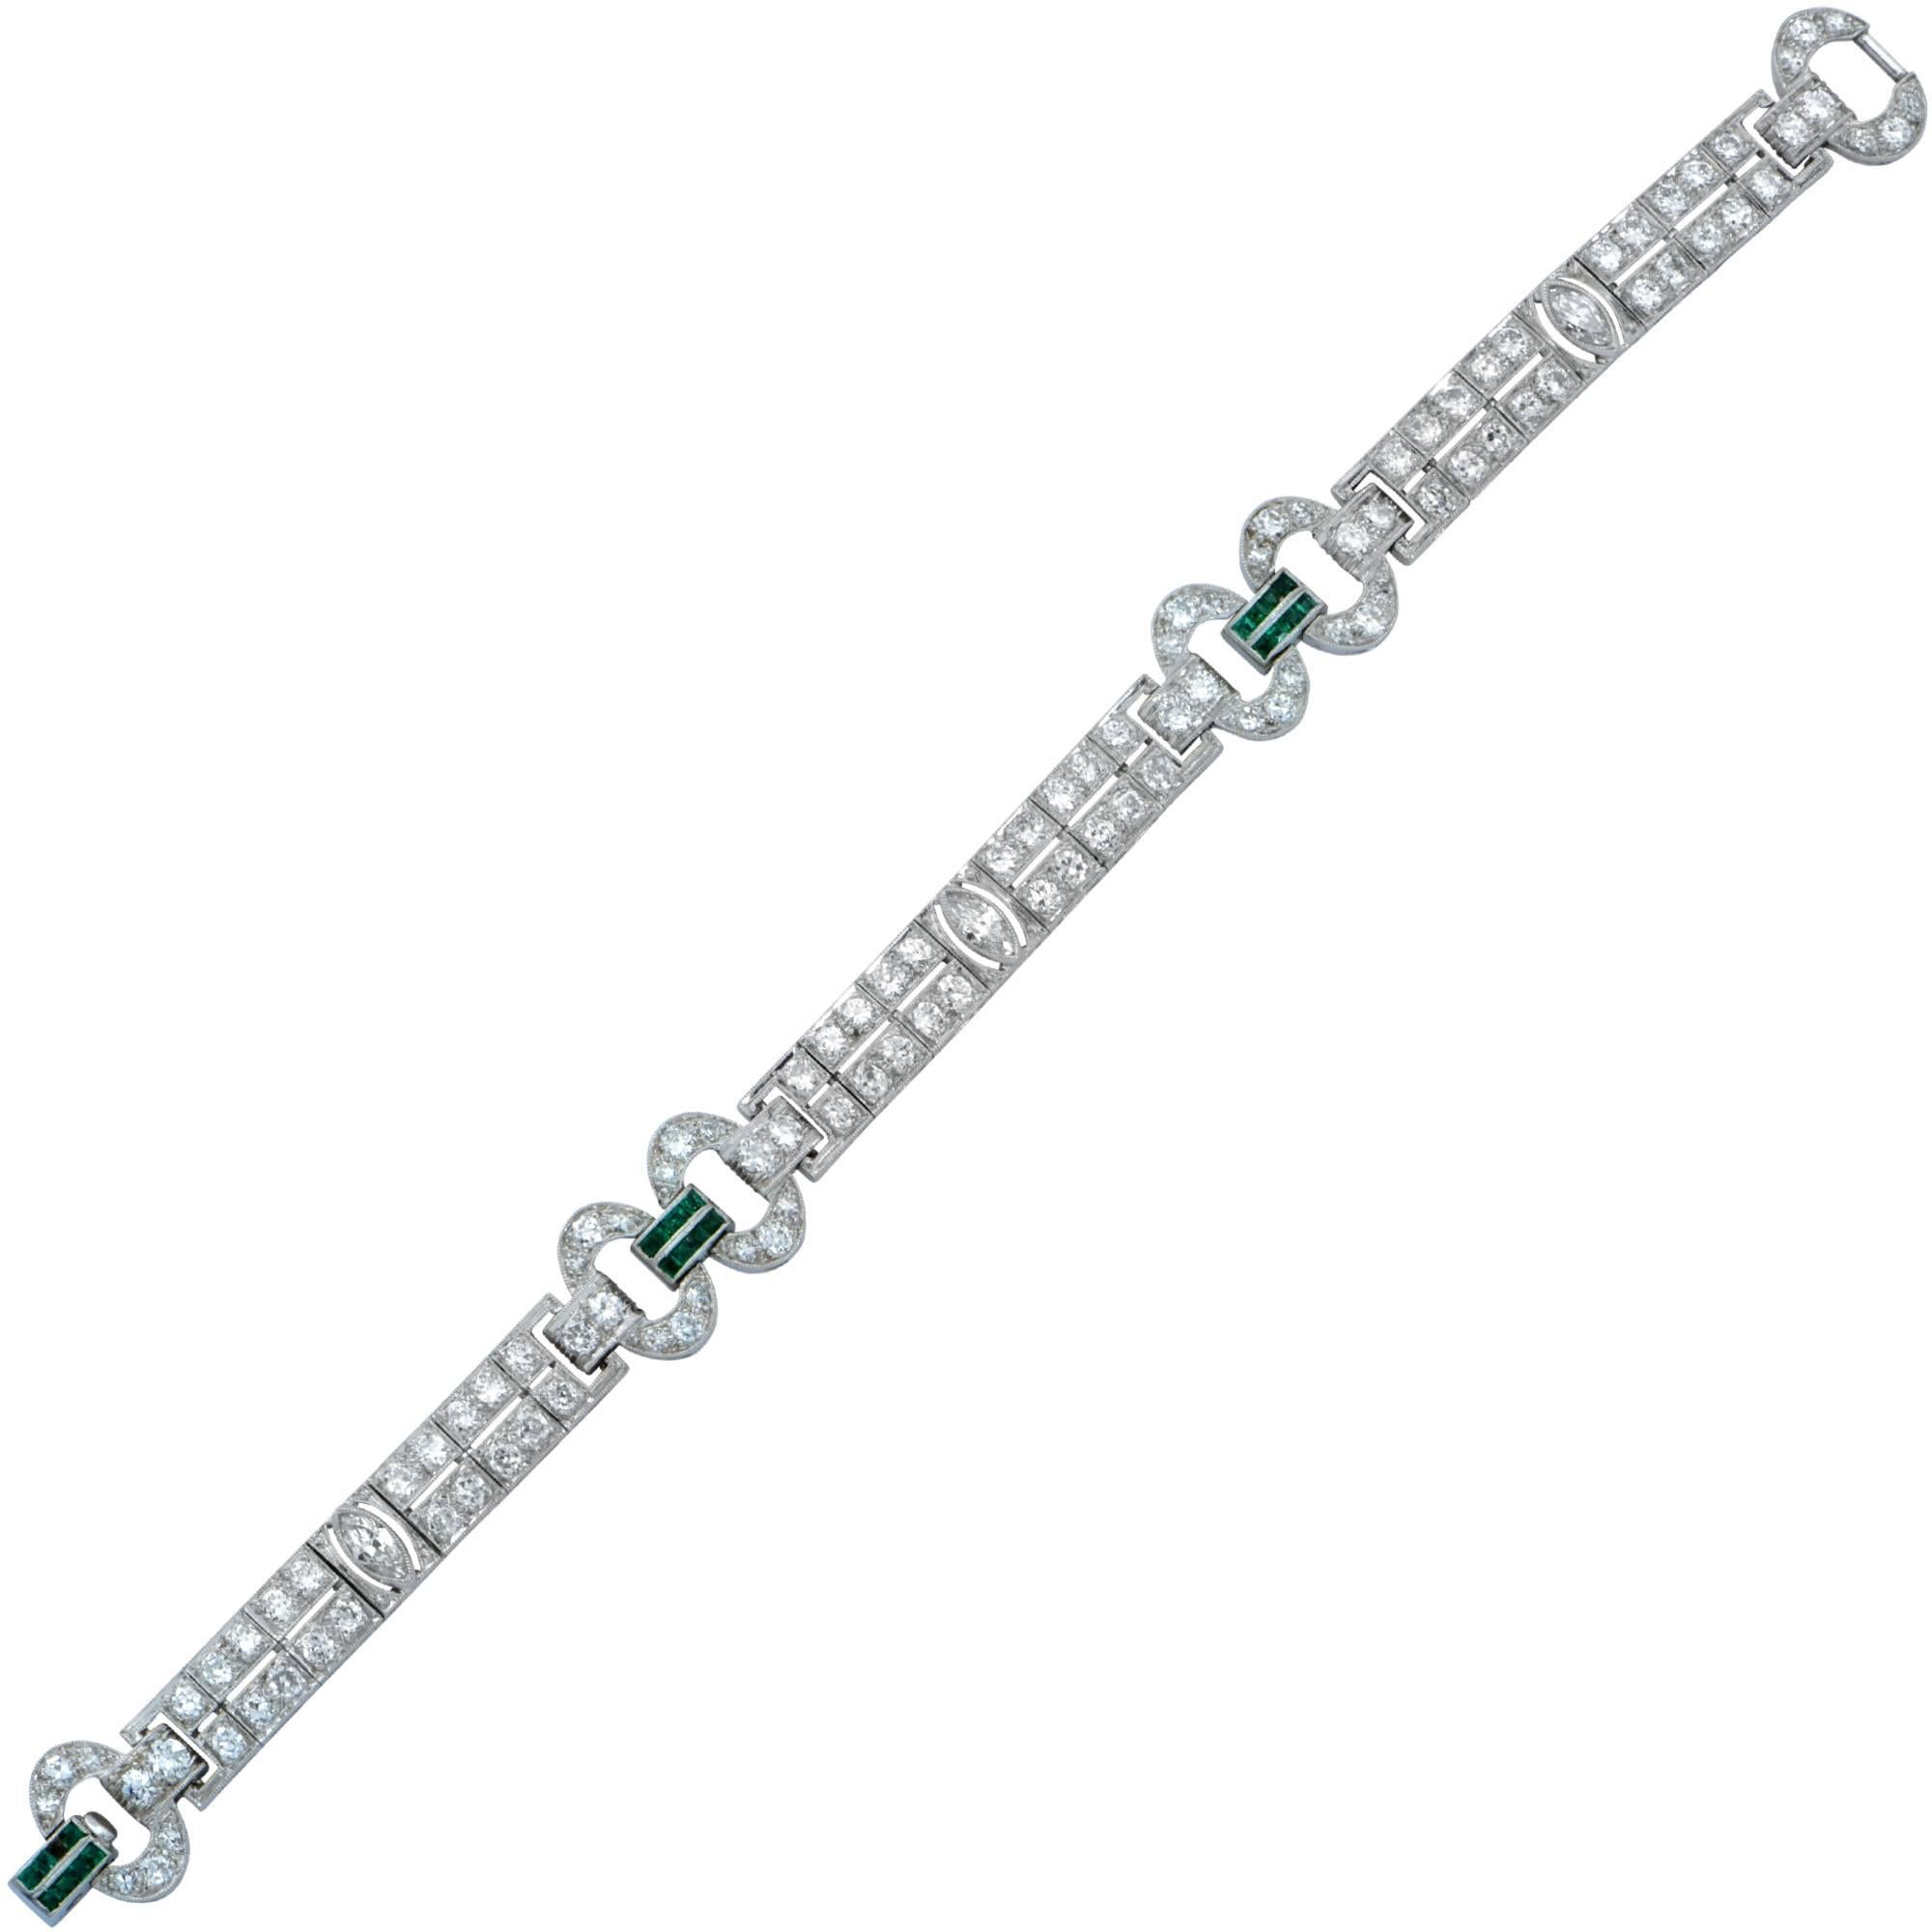 5.20 Carat Art Deco Diamond and Emerald Bracelet